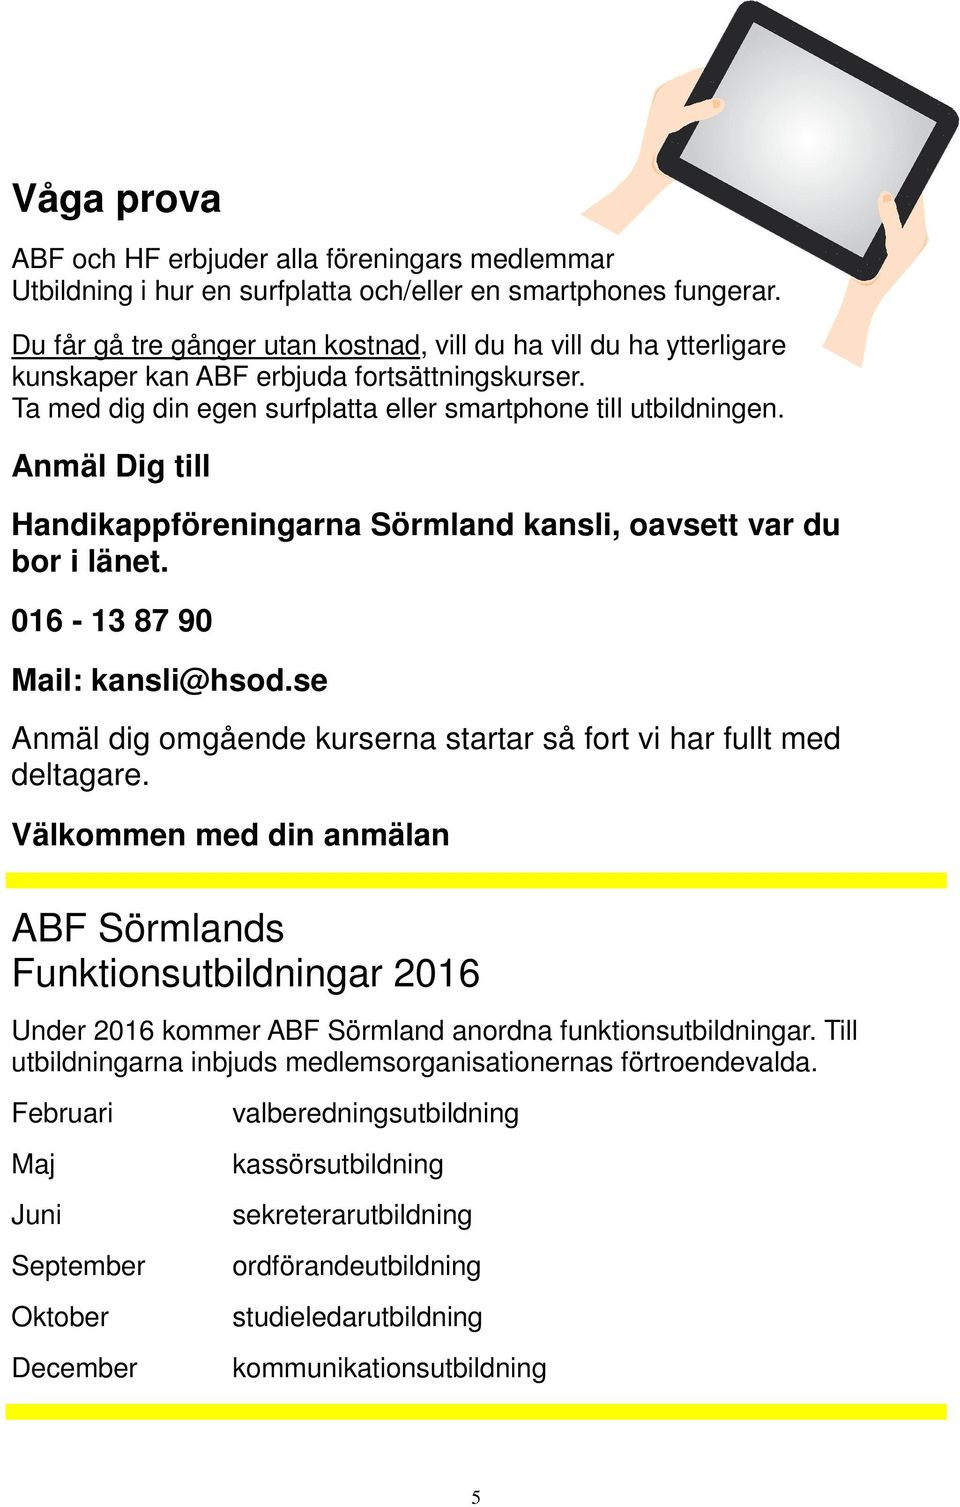 Anmäl Dig till Handikappföreningarna Sörmland kansli, oavsett var du bor i länet. 016-13 87 90 Mail: kansli@hsod.se Anmäl dig omgående kurserna startar så fort vi har fullt med deltagare.